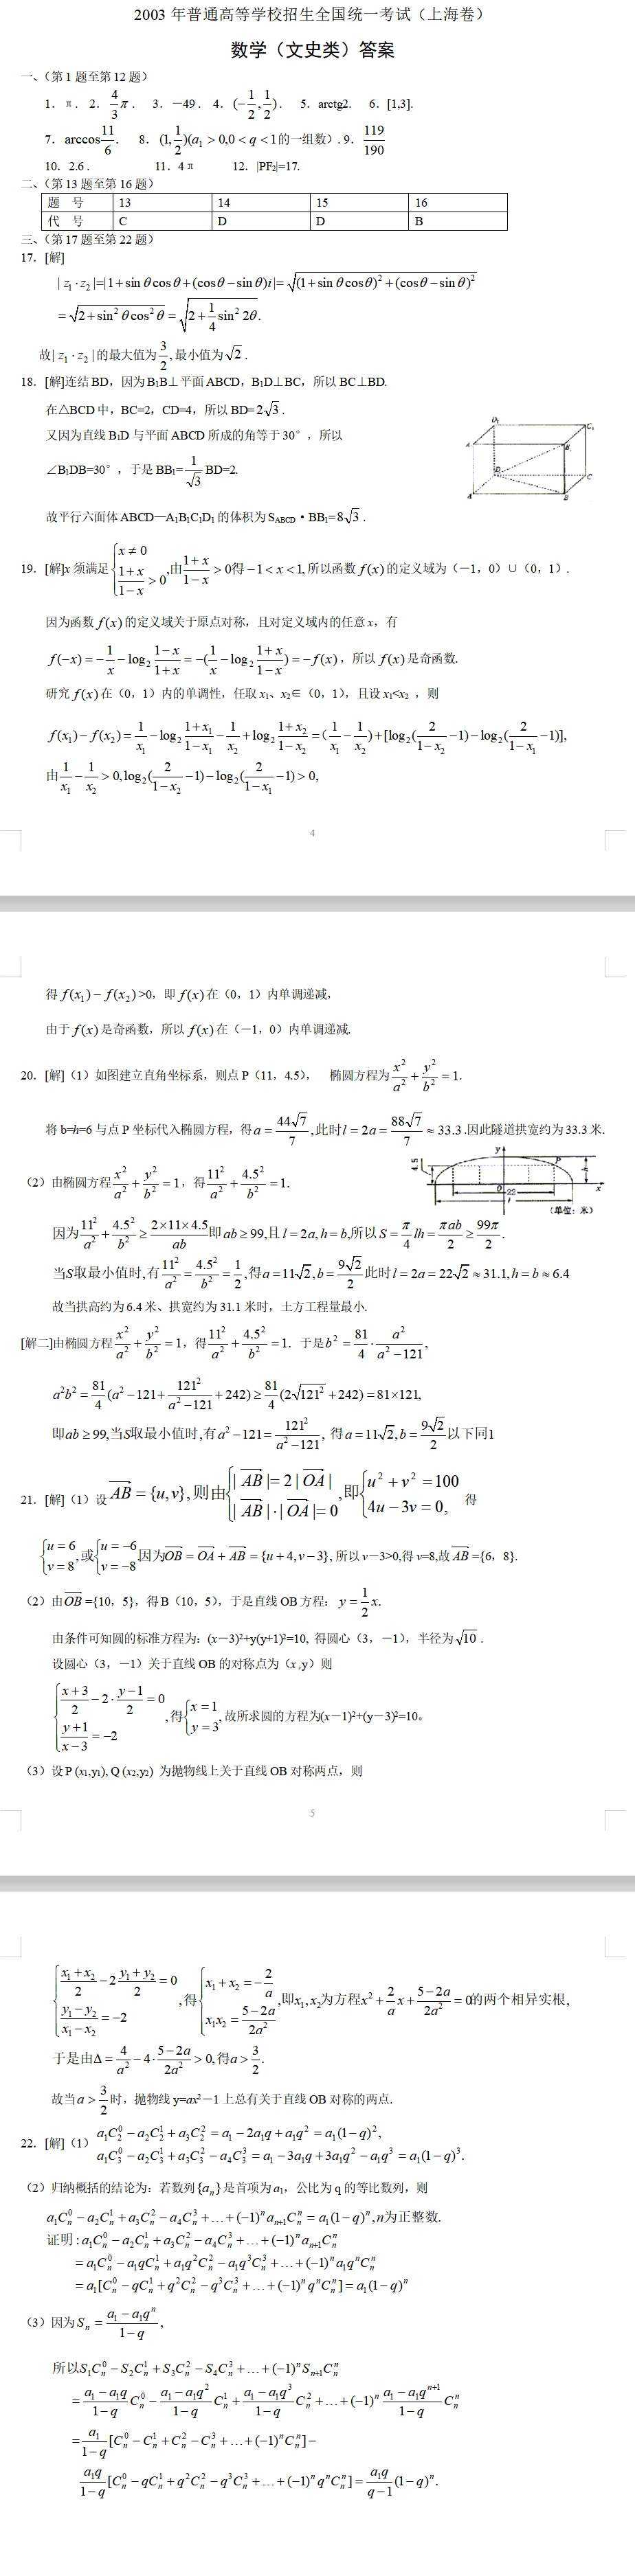 2003年高考数学真题上海卷(文史类)